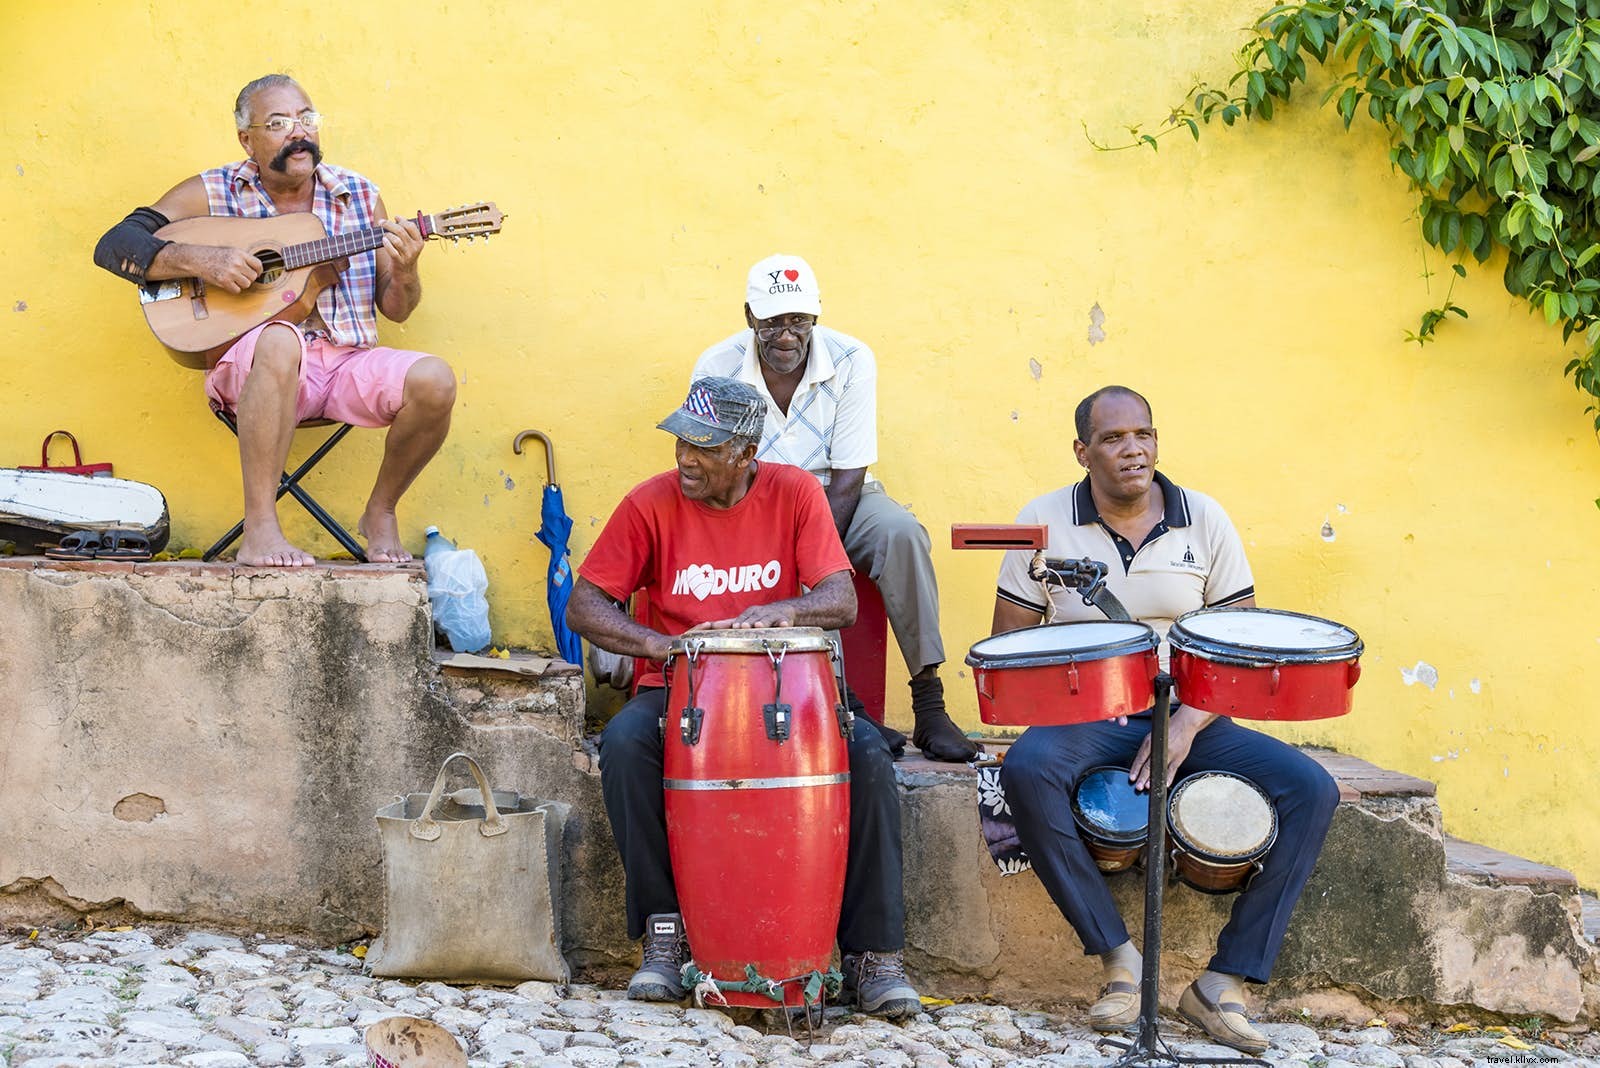 El ritmo cubano:el alma musical de Cuba 